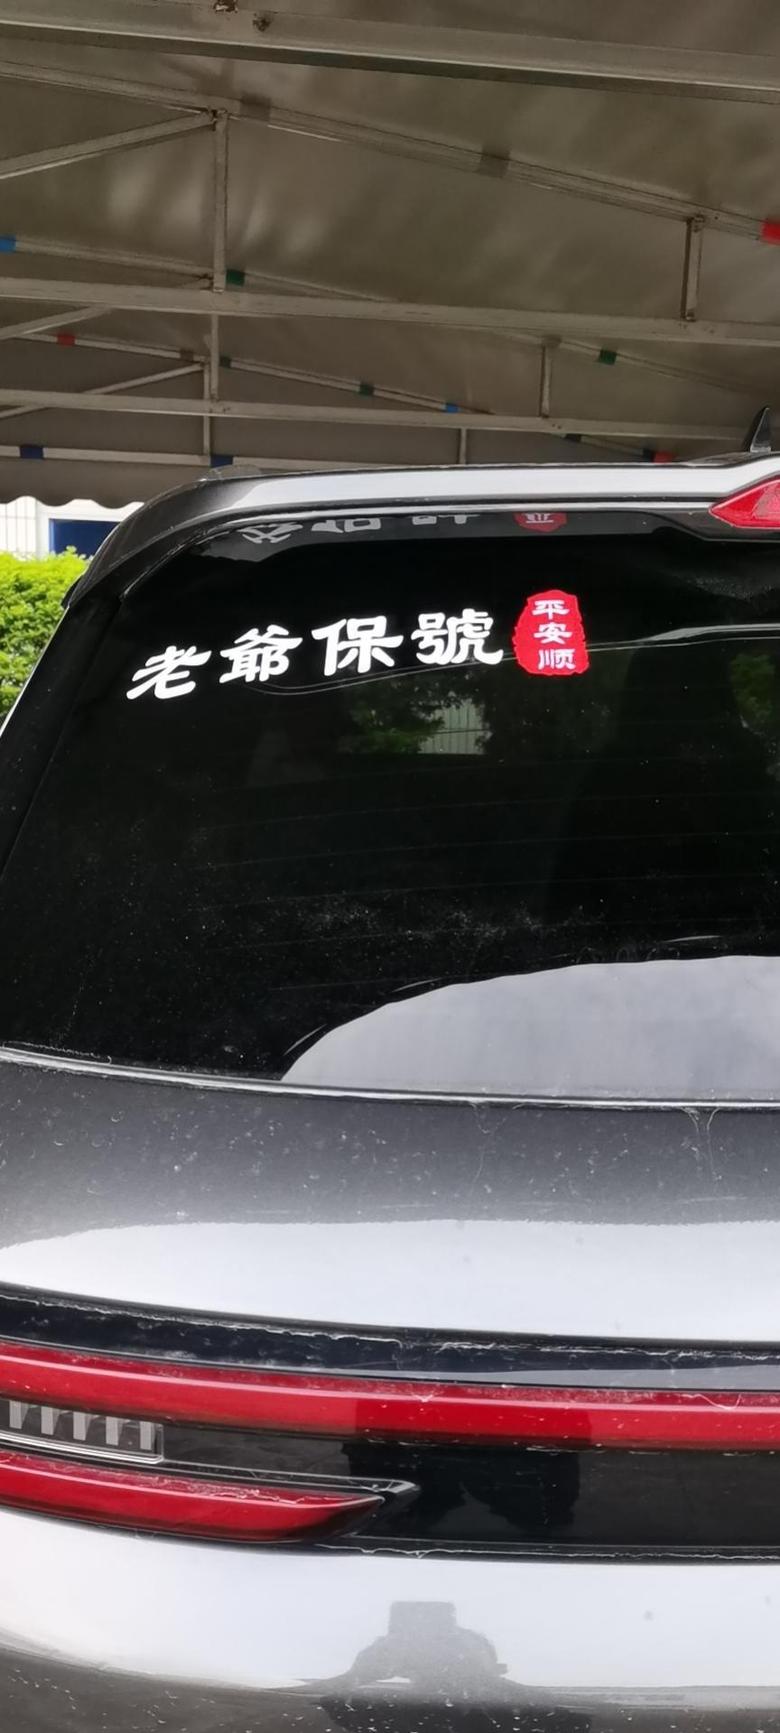 长安cs55 plus 我是2021款长安CS55plus自动尊贵车型车主，我来自广东汕头地区，我行车7000多公里，平均油耗每公里6毛多。最低油耗6.8